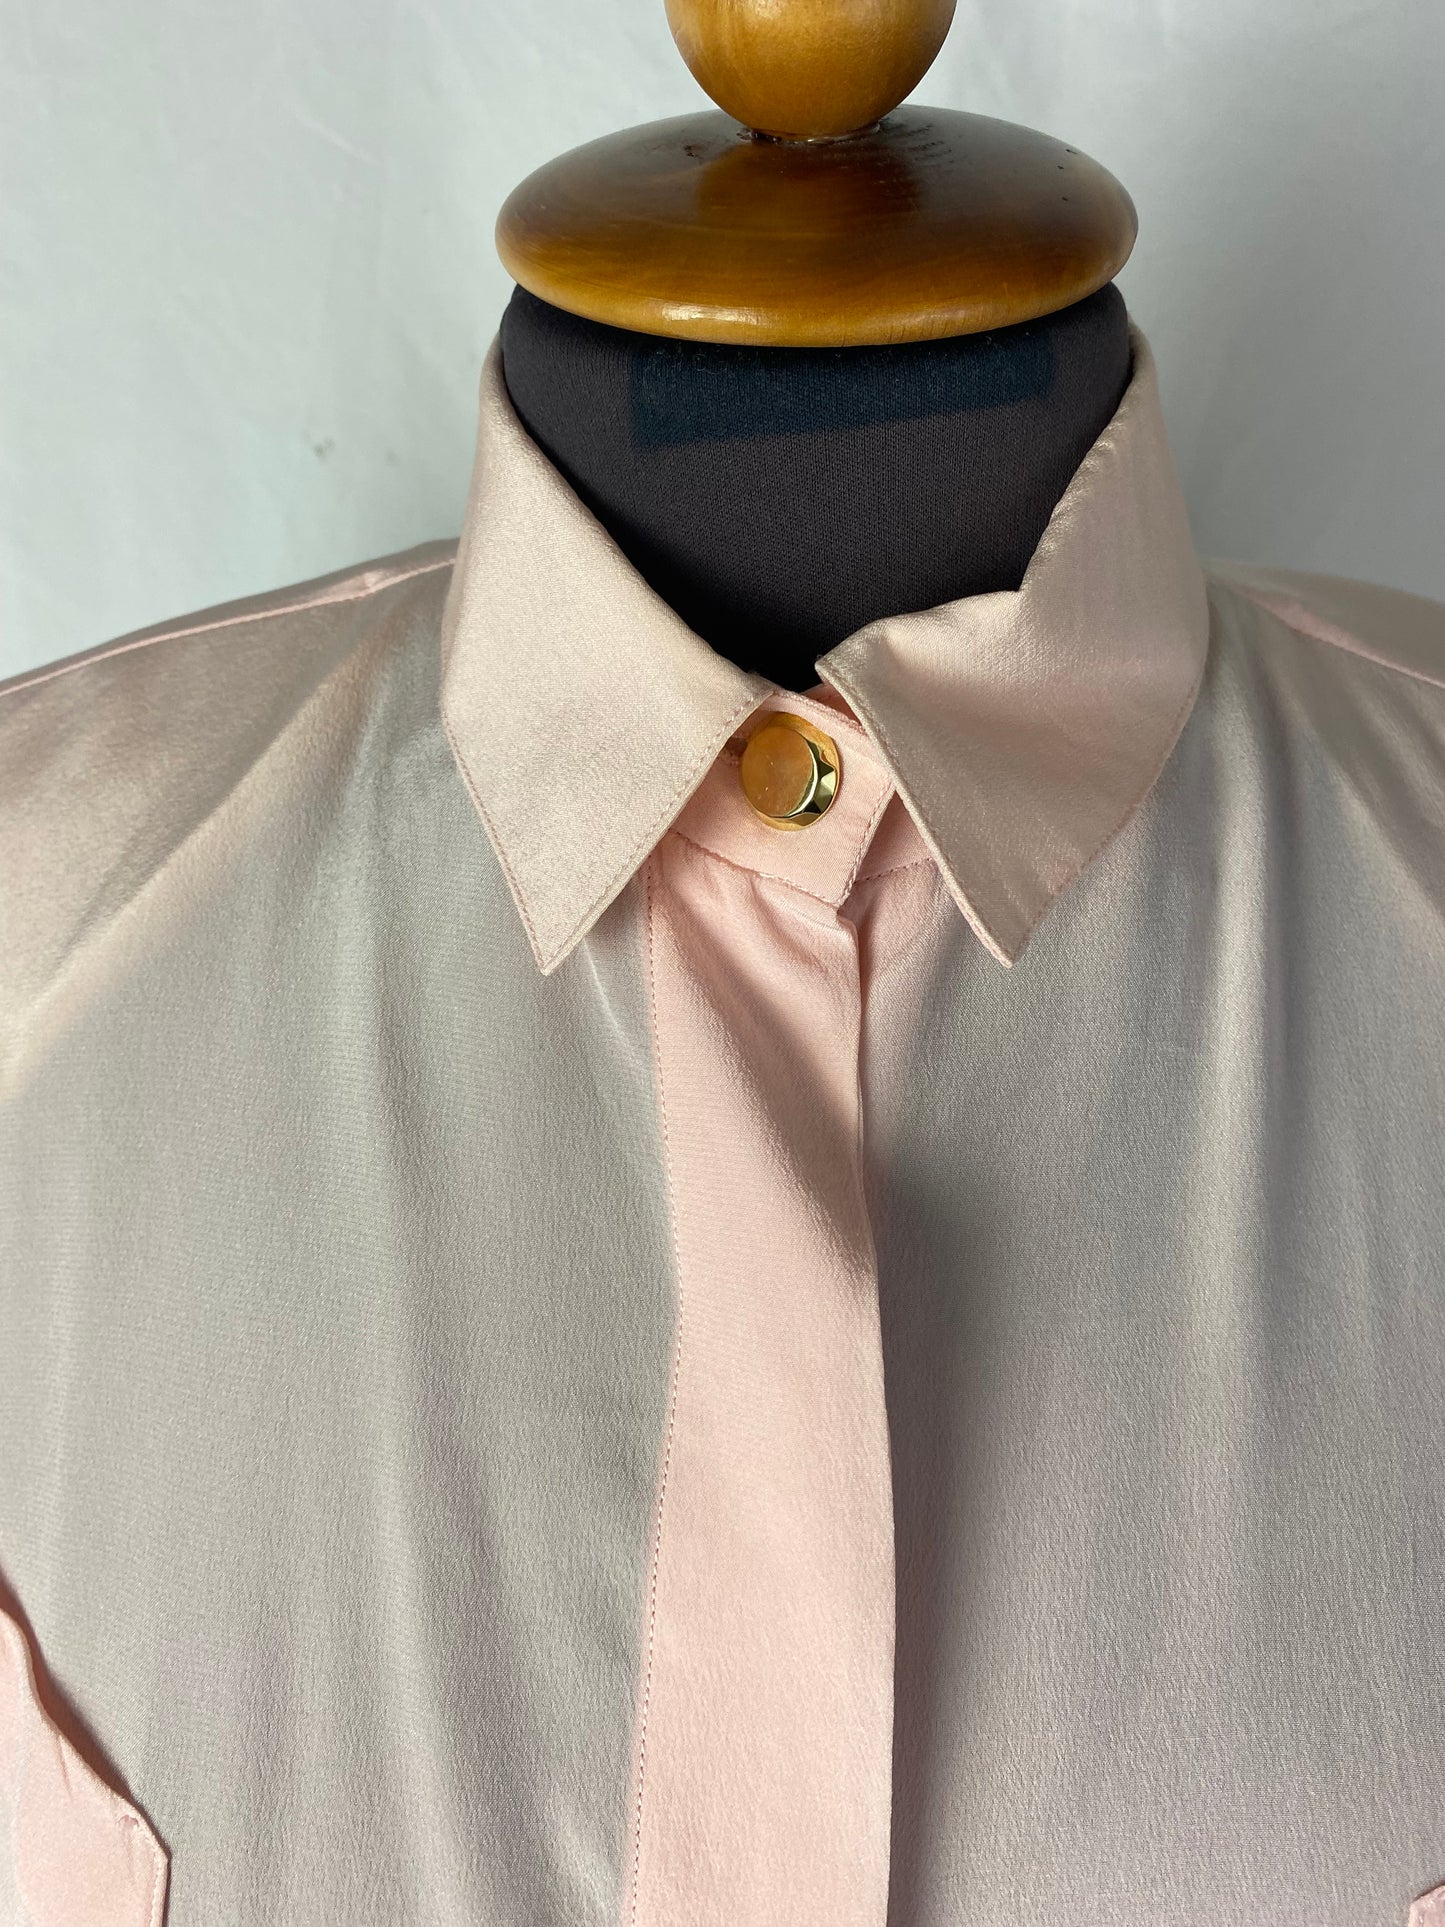 Camicia rosa in seta - TG. 42/44